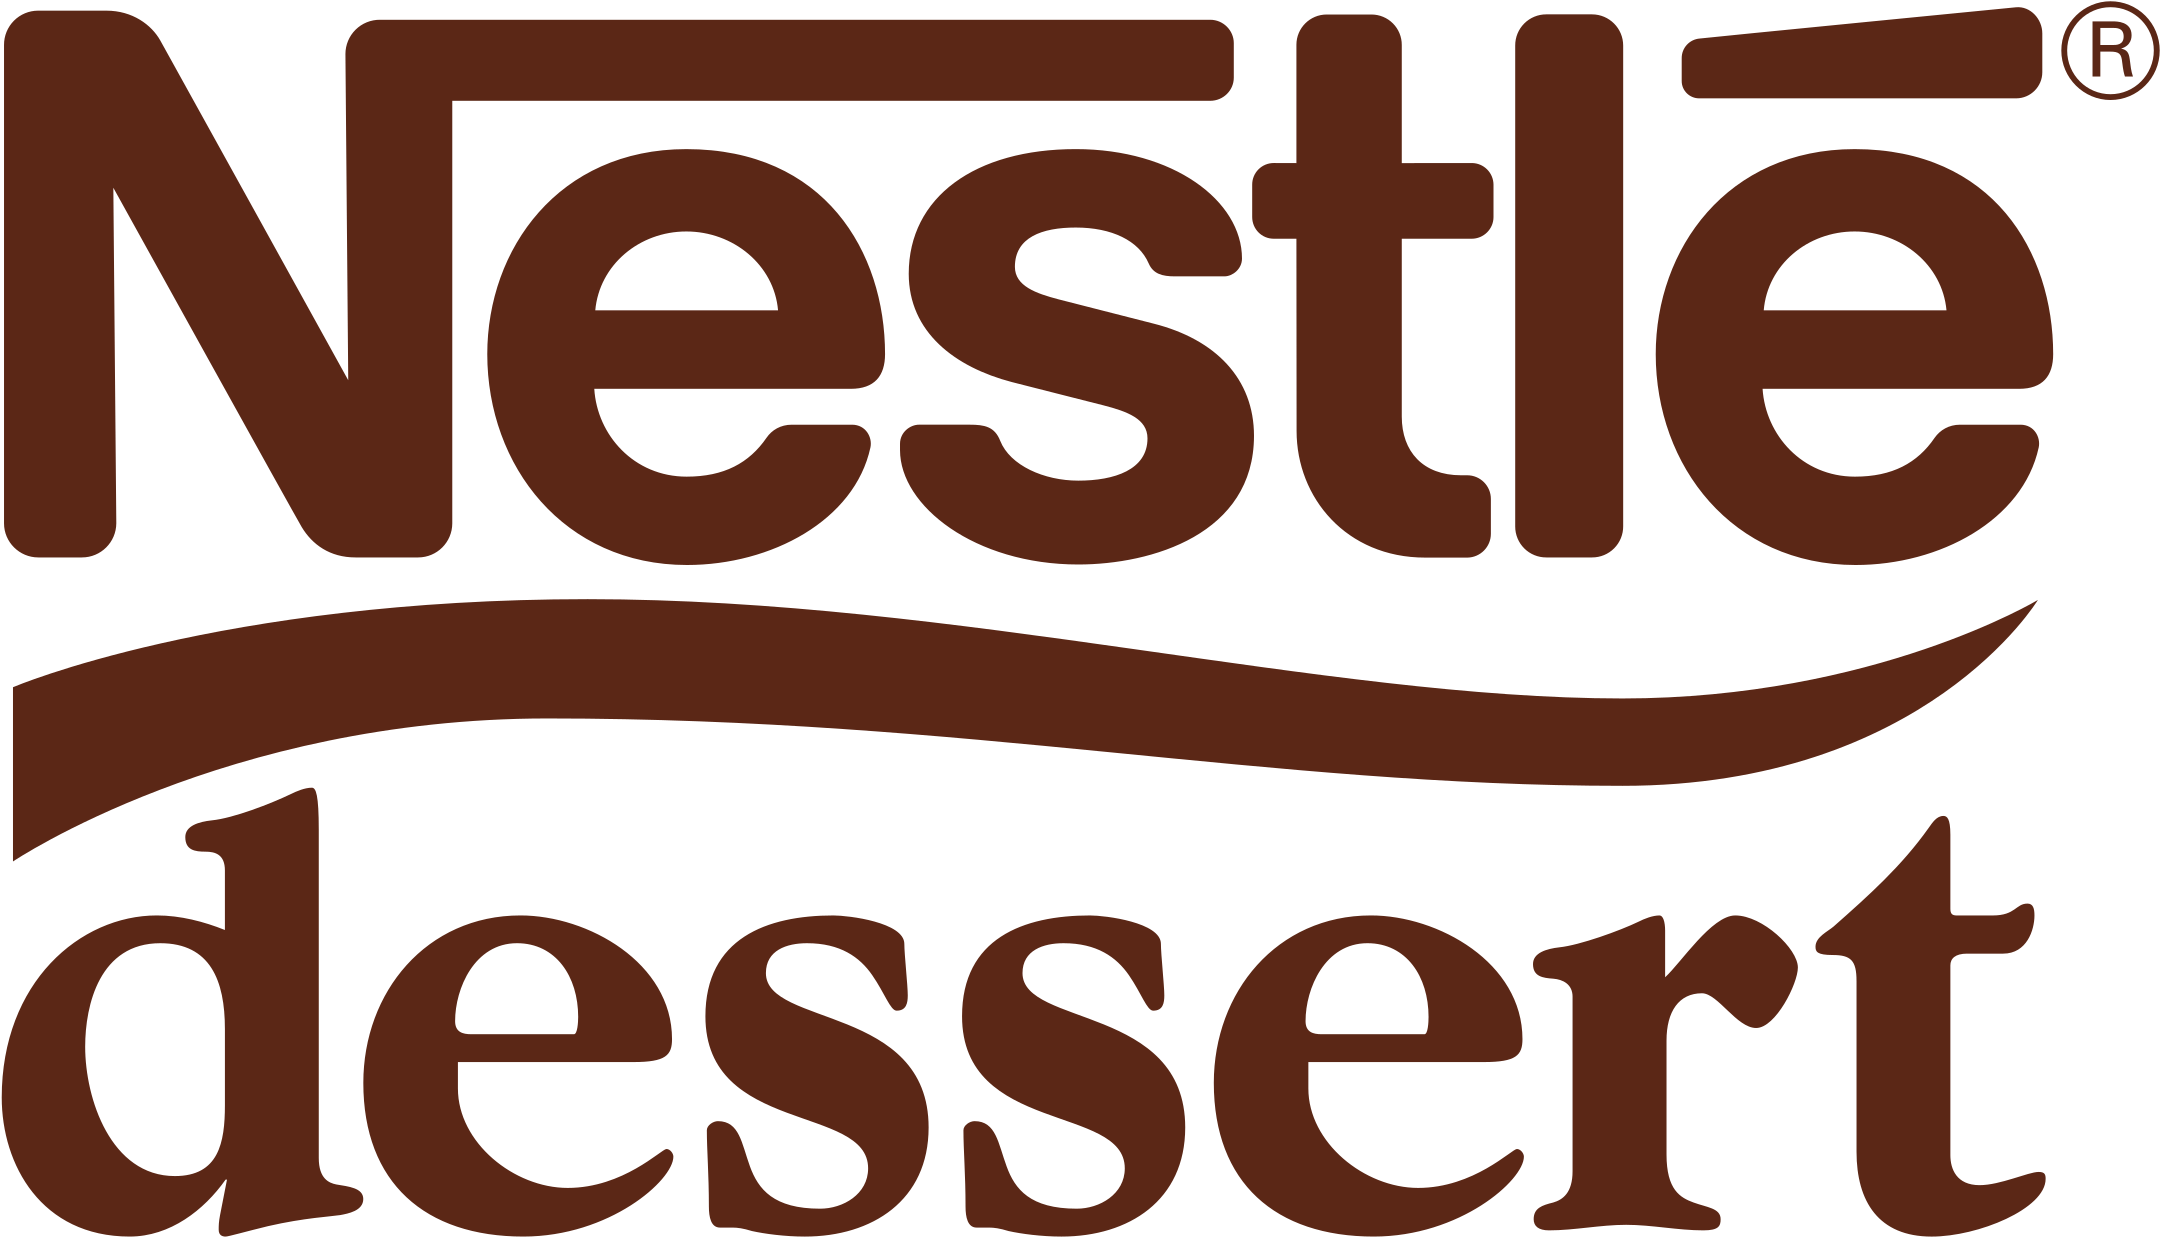 Nestlé Logo No Background